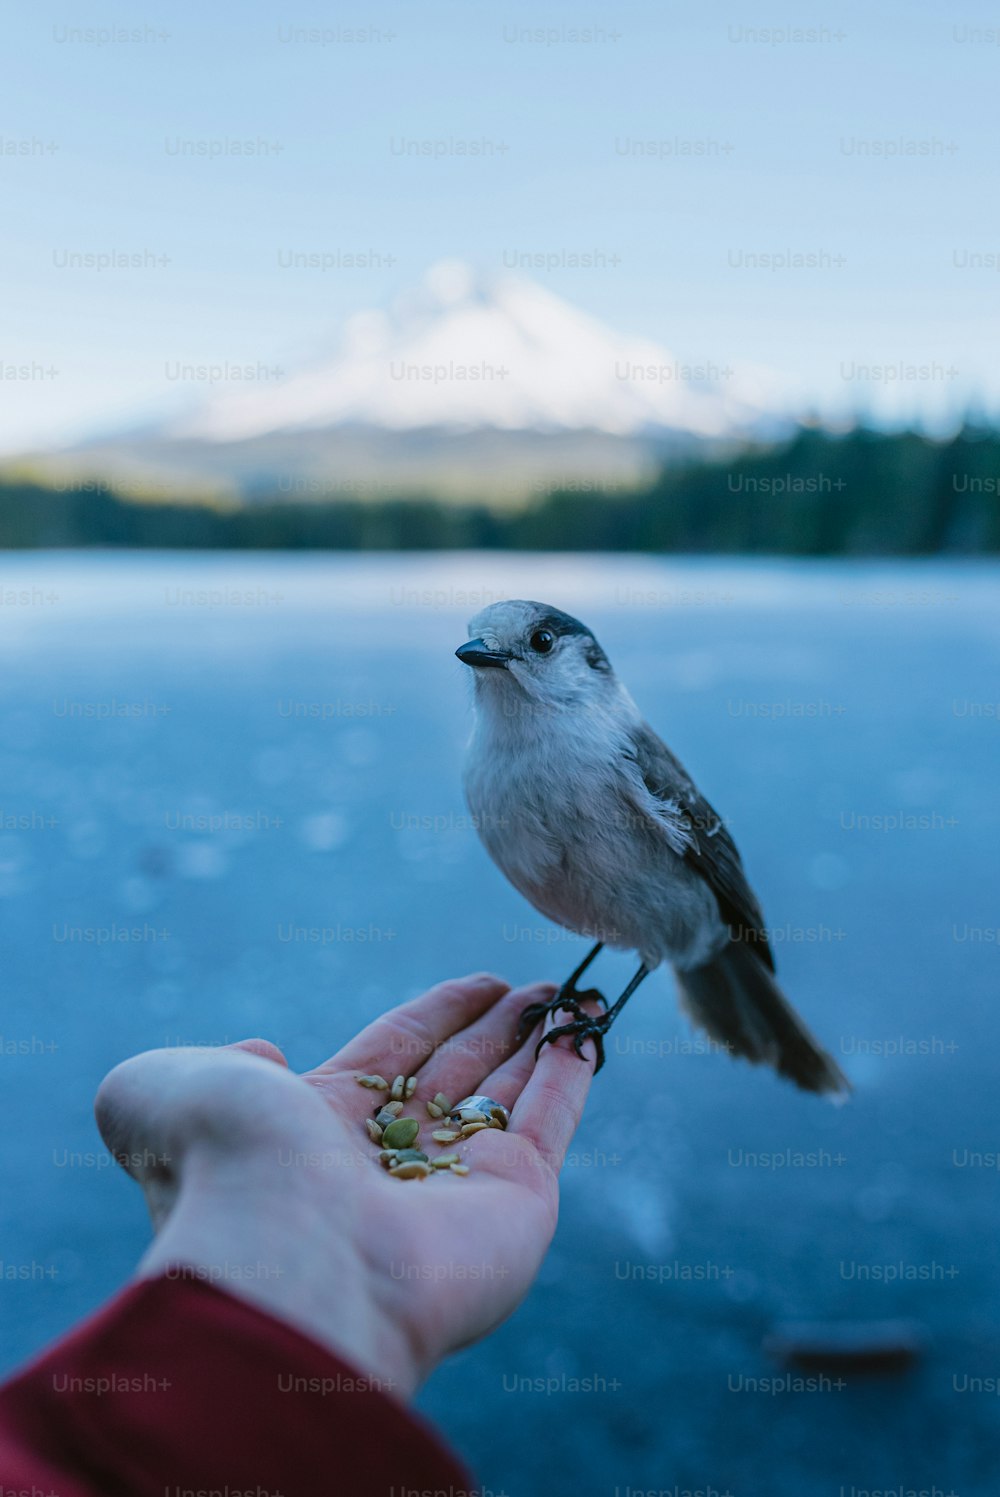 un petit oiseau perché sur la main d’une personne